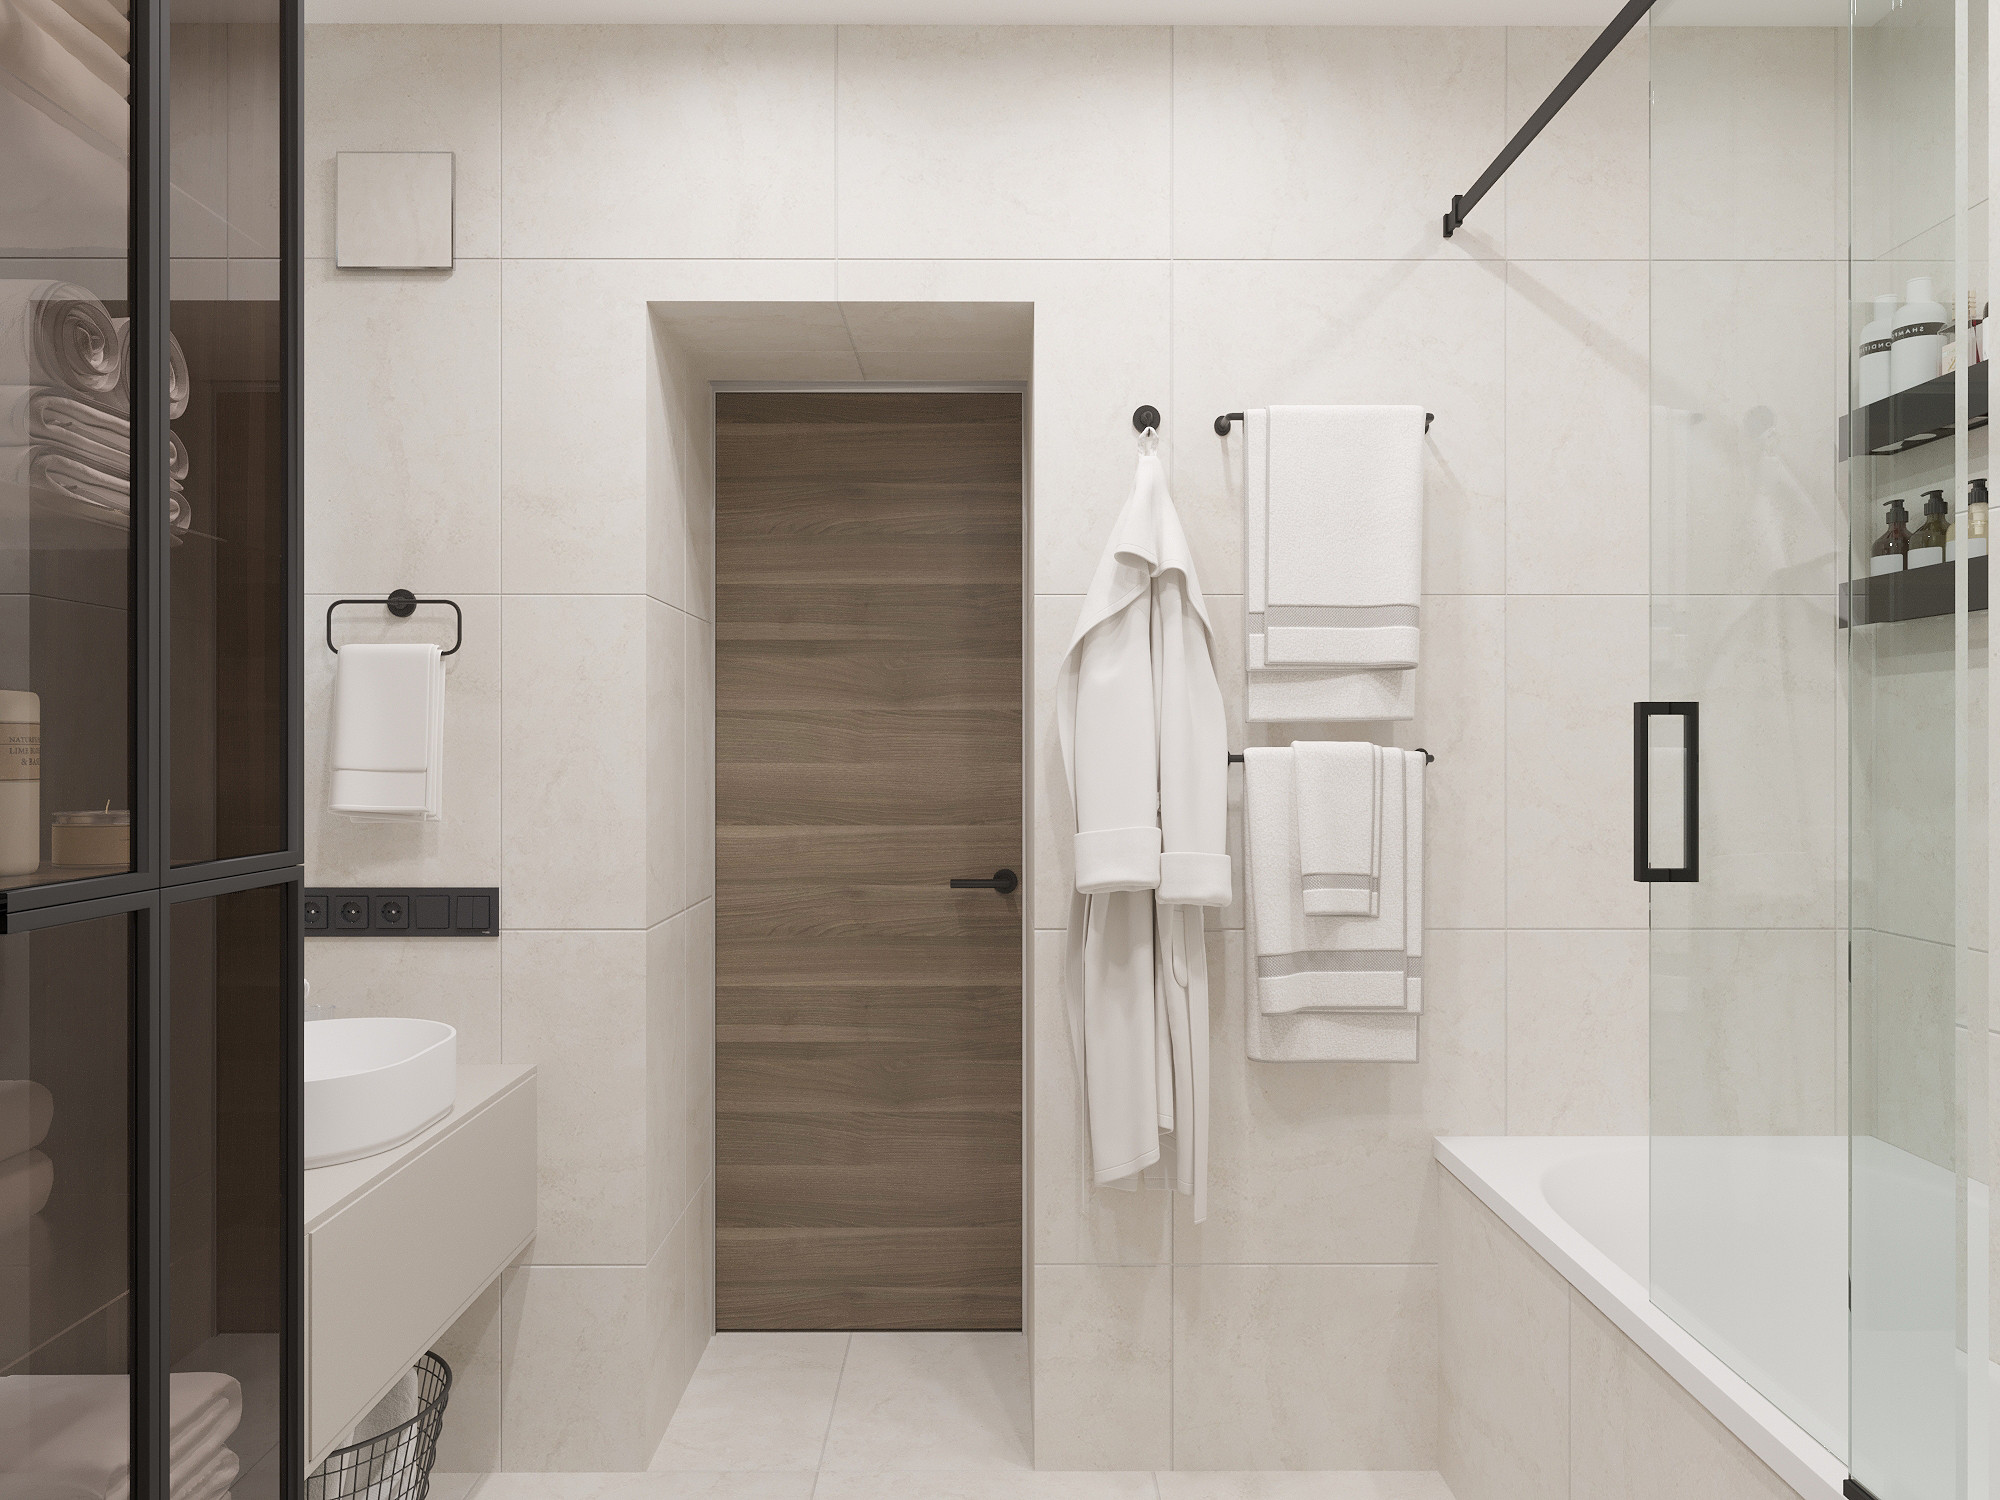 Дизайн интерьера: ванная комната с плиткой под дерево в мокрой зоне